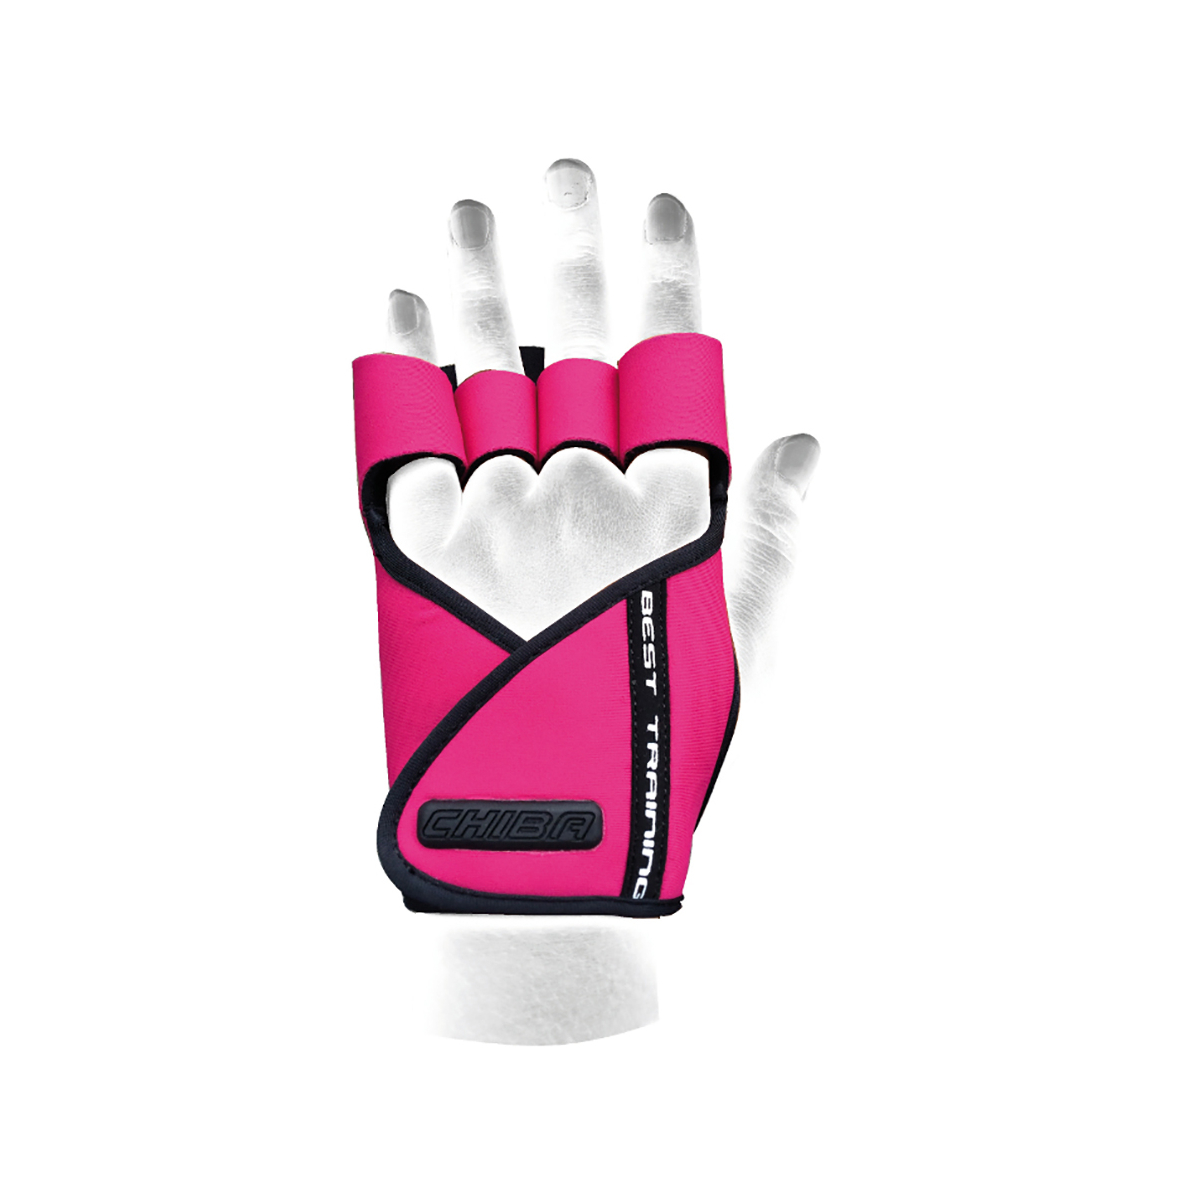 Dámské fitness rukavice Lady Motivation Pink M - CHIBA CHIBA